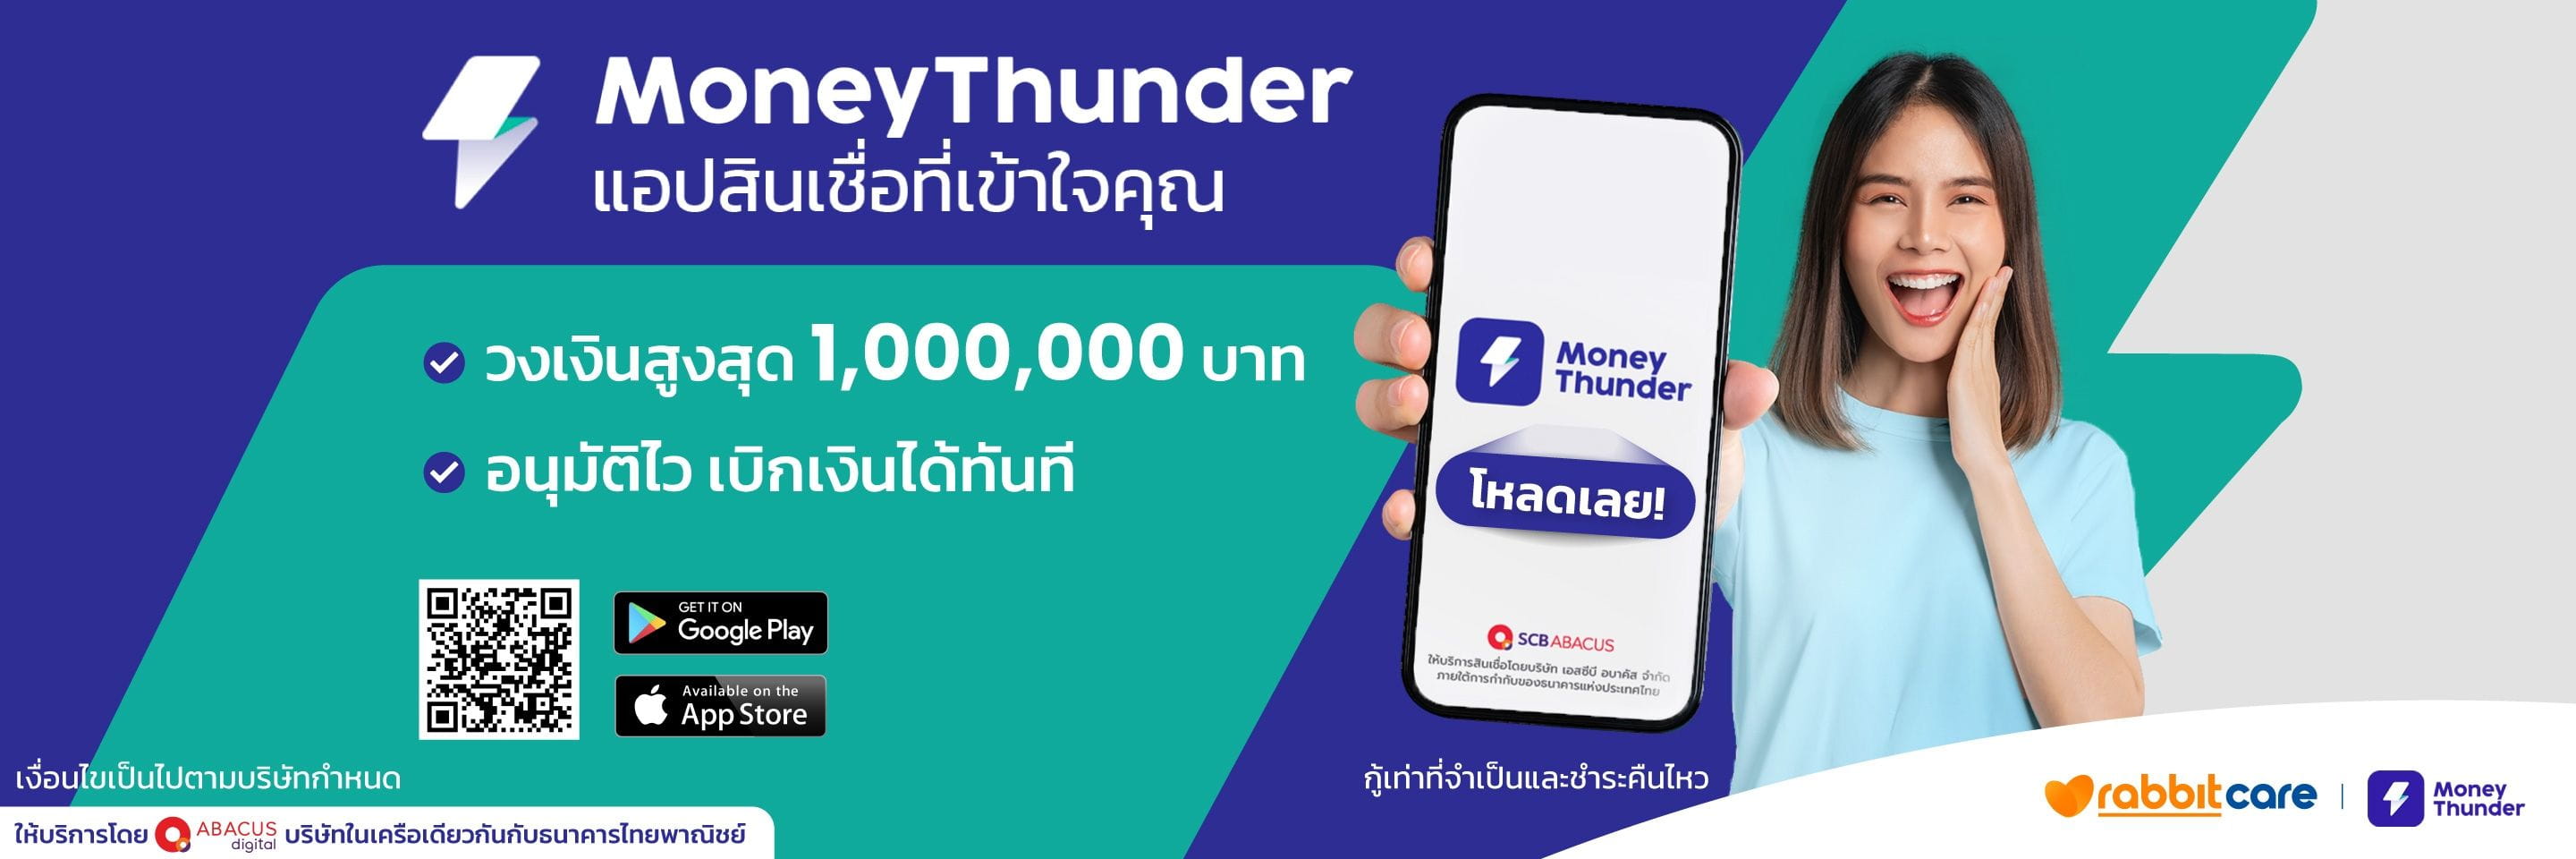 Money-Thunder_Top-Banner_desktop_update_16-01-24.jpg